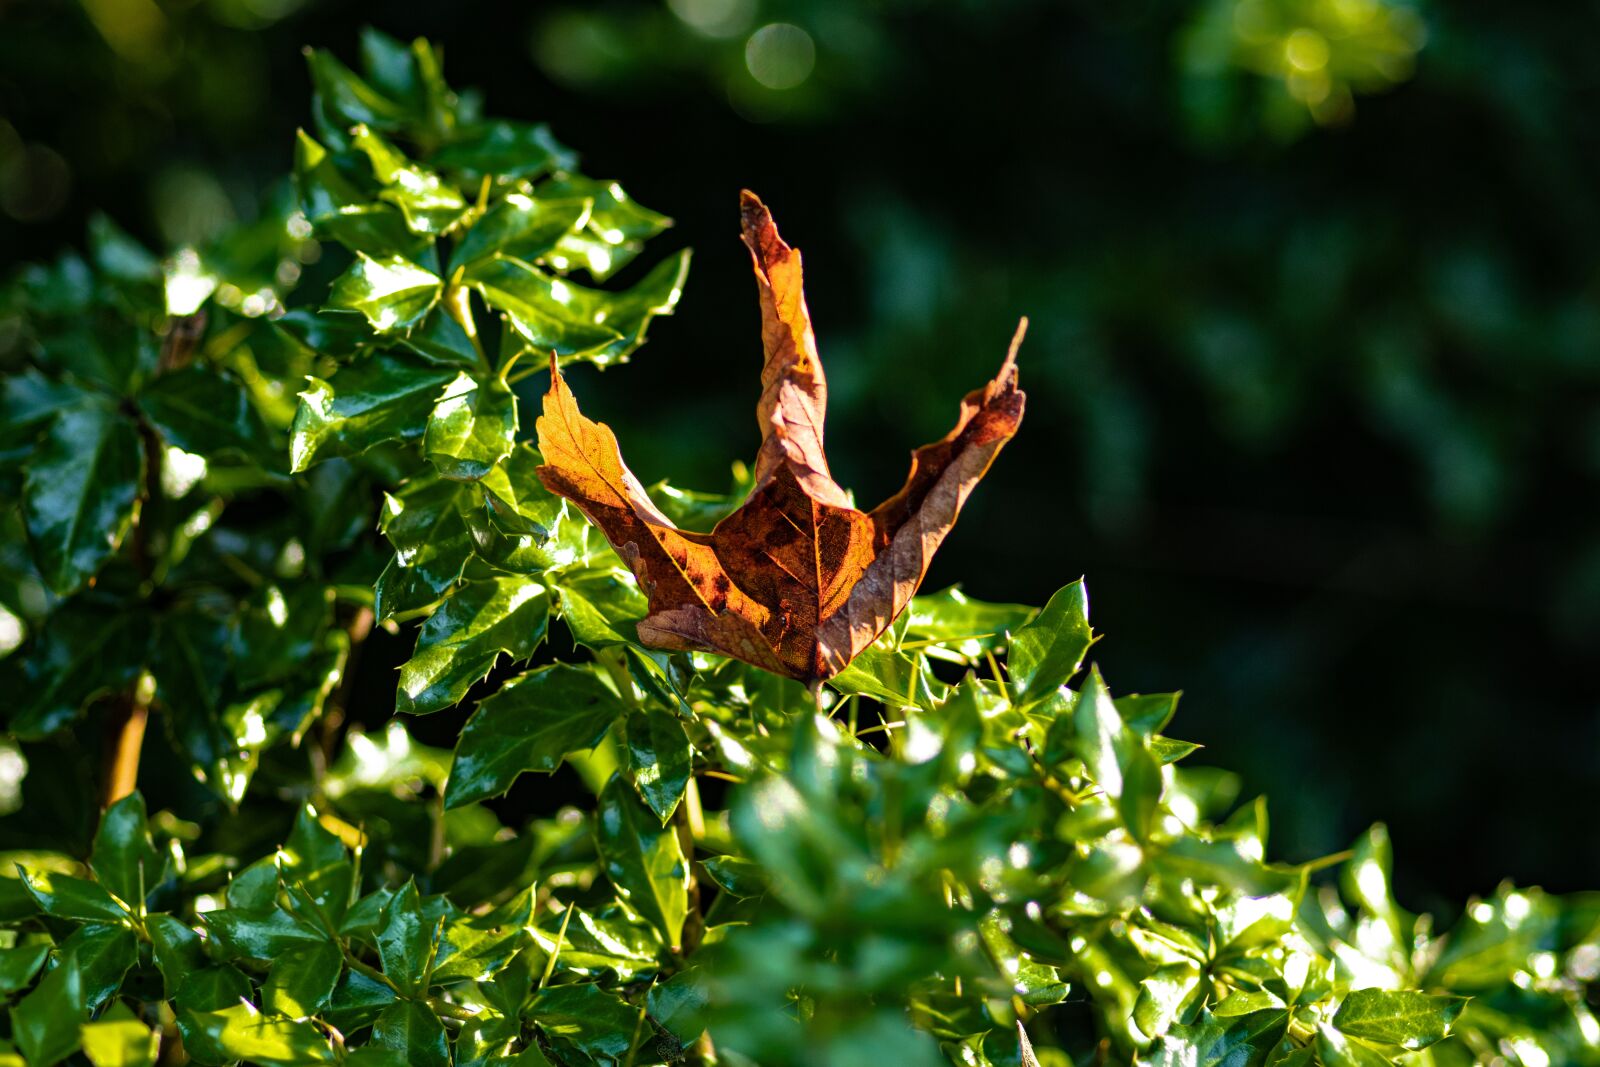 Canon EOS 80D sample photo. "Fall foliage, leaf, autumn" photography